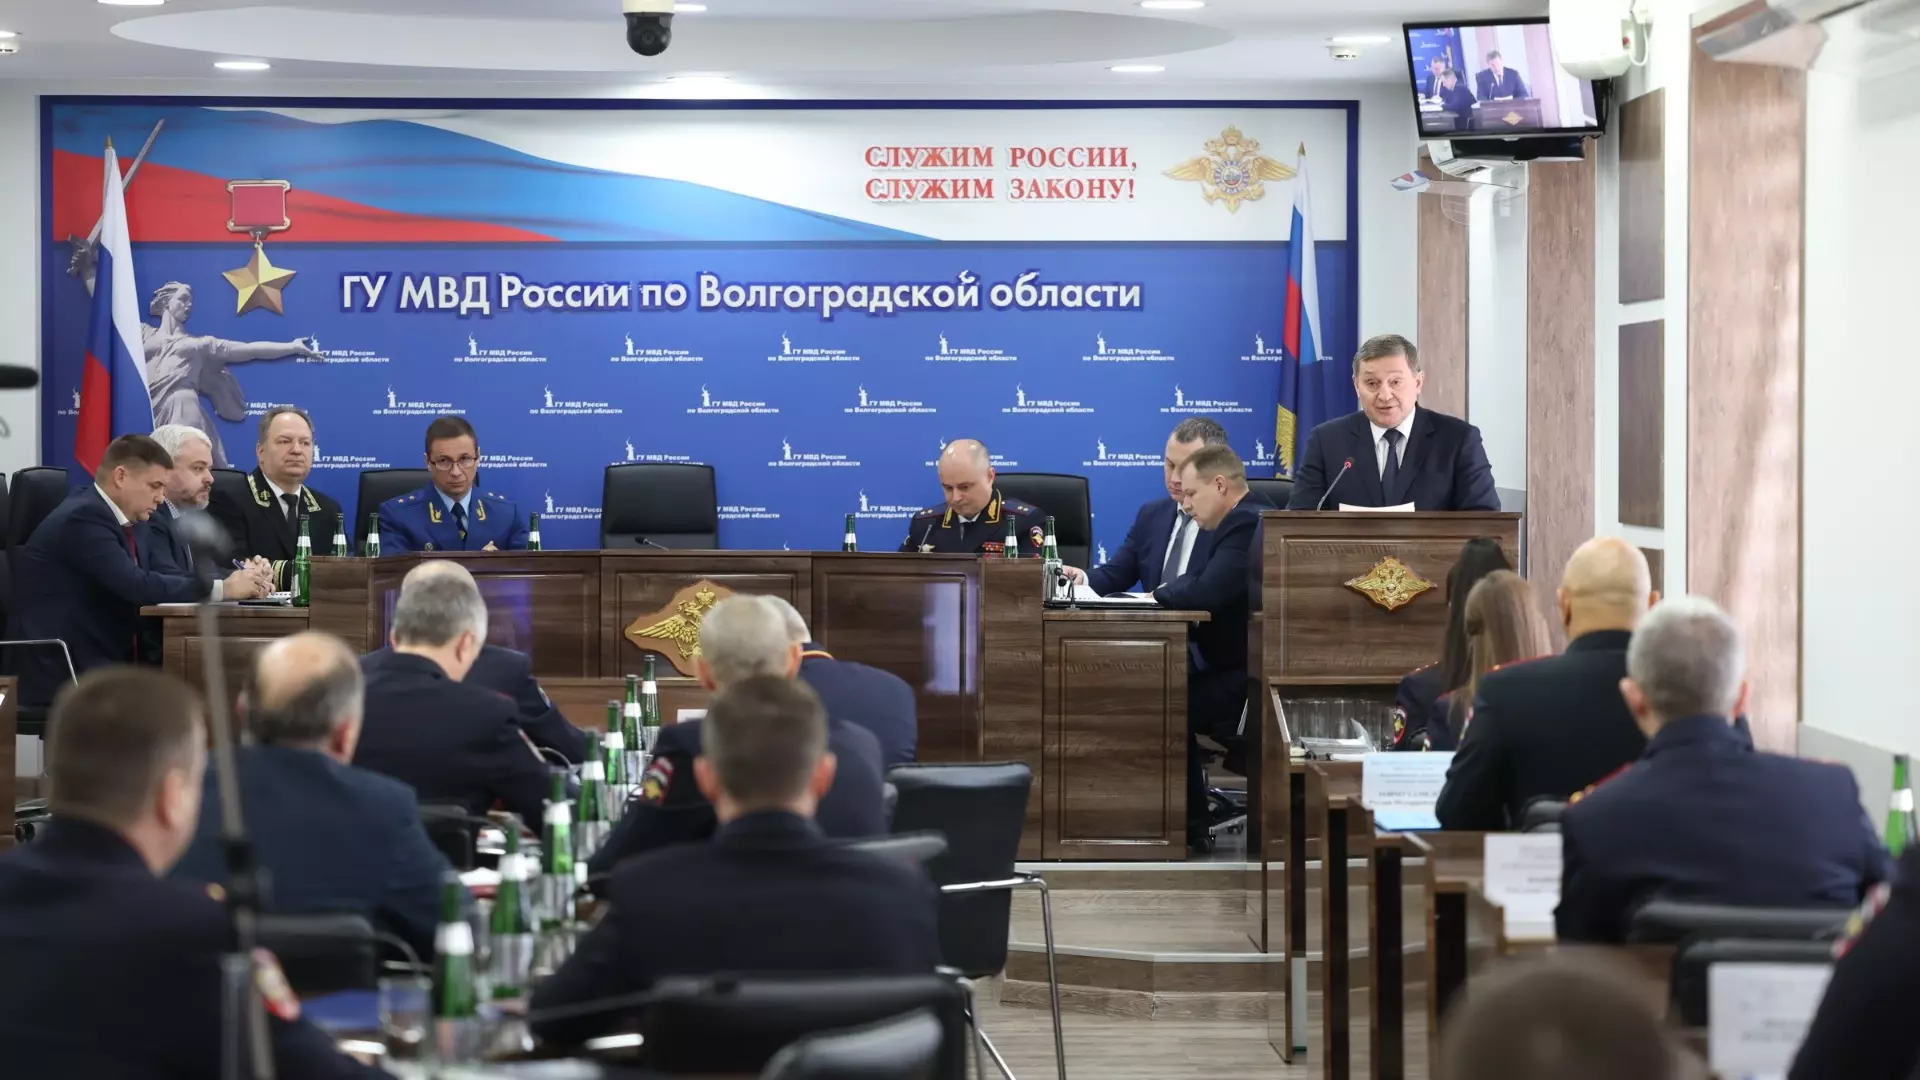 Губернатор Андрей Бочаров вместе с руководством областного управления МВД обсудили работу силового блока